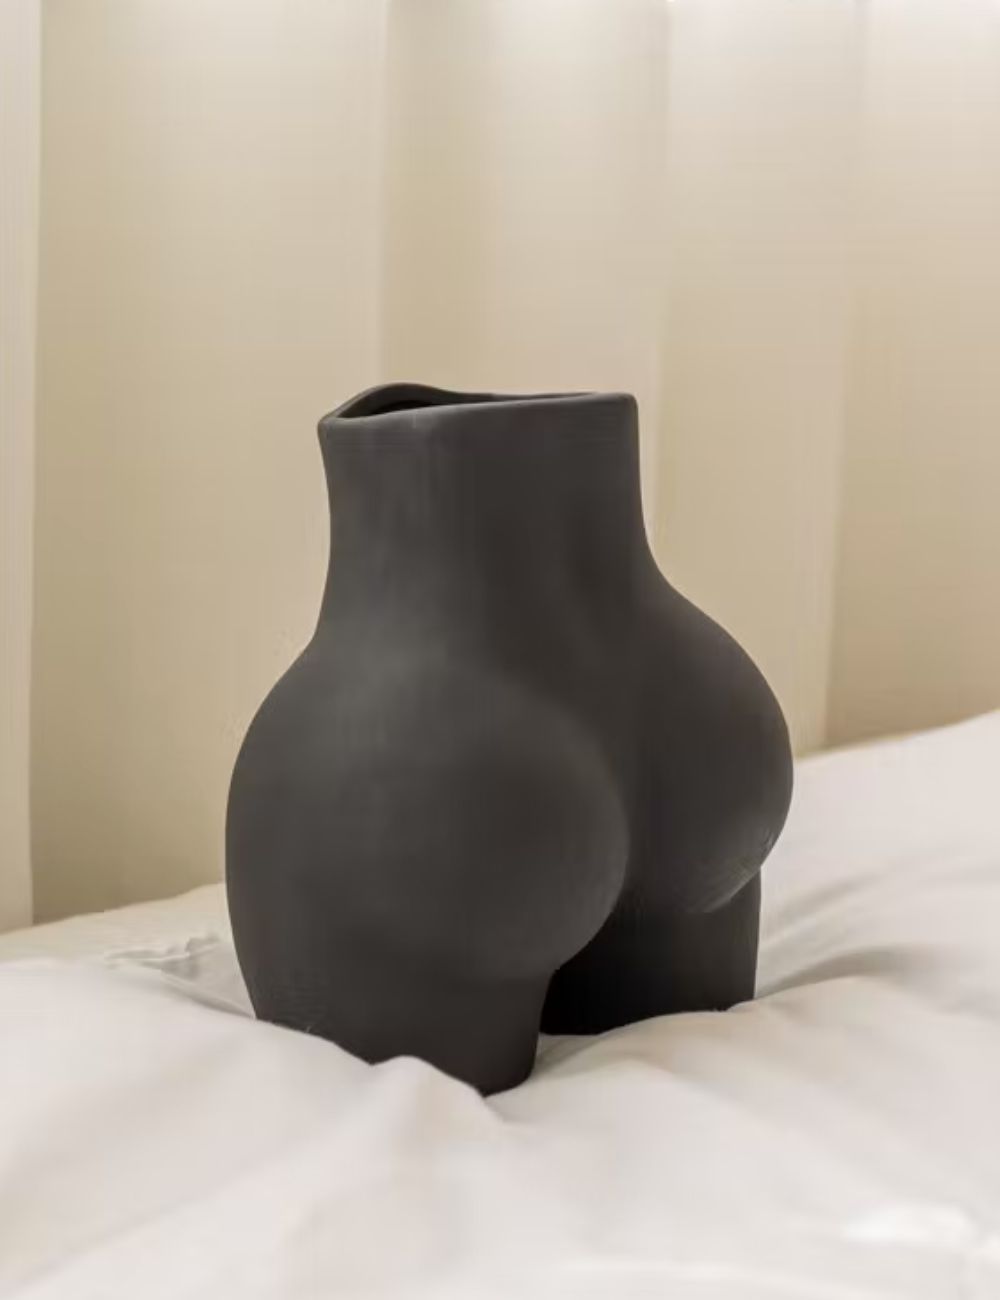 copy of Matt White Large "Love Handles"Booty Vase